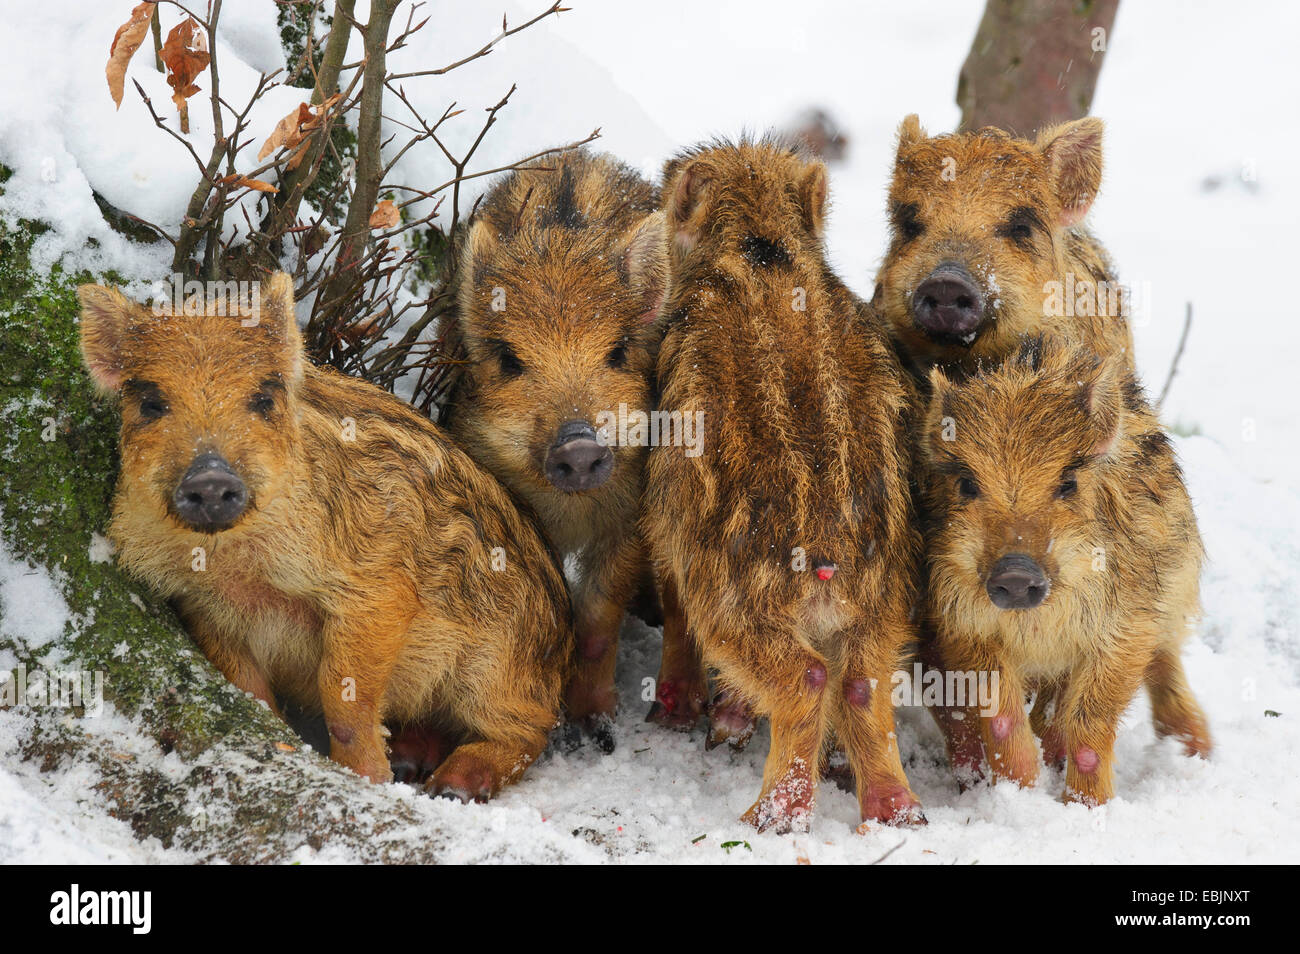 Le sanglier, le porc, le sanglier (Sus scrofa), cinq shoats réchauffe l'autre dans la neige, l'ALLEMAGNE, Basse-Saxe Banque D'Images